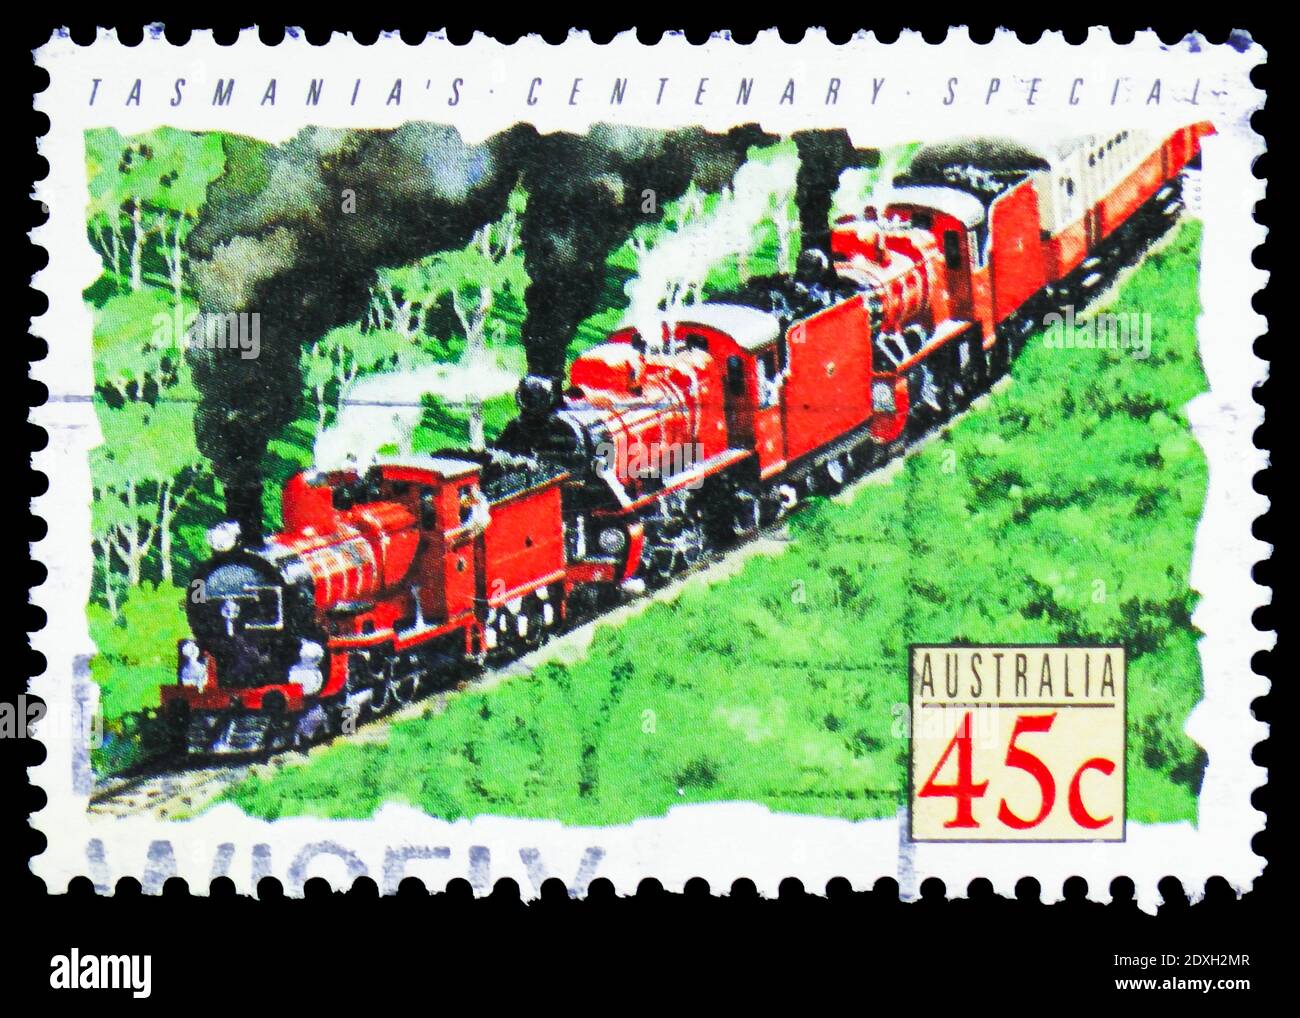 MOSCÚ, RUSIA - 30 DE MARZO de 2019: Un sello impreso en Australia muestra Centenary Special, Tasmania 1971, serie de trenes, alrededor de 1993 Foto de stock